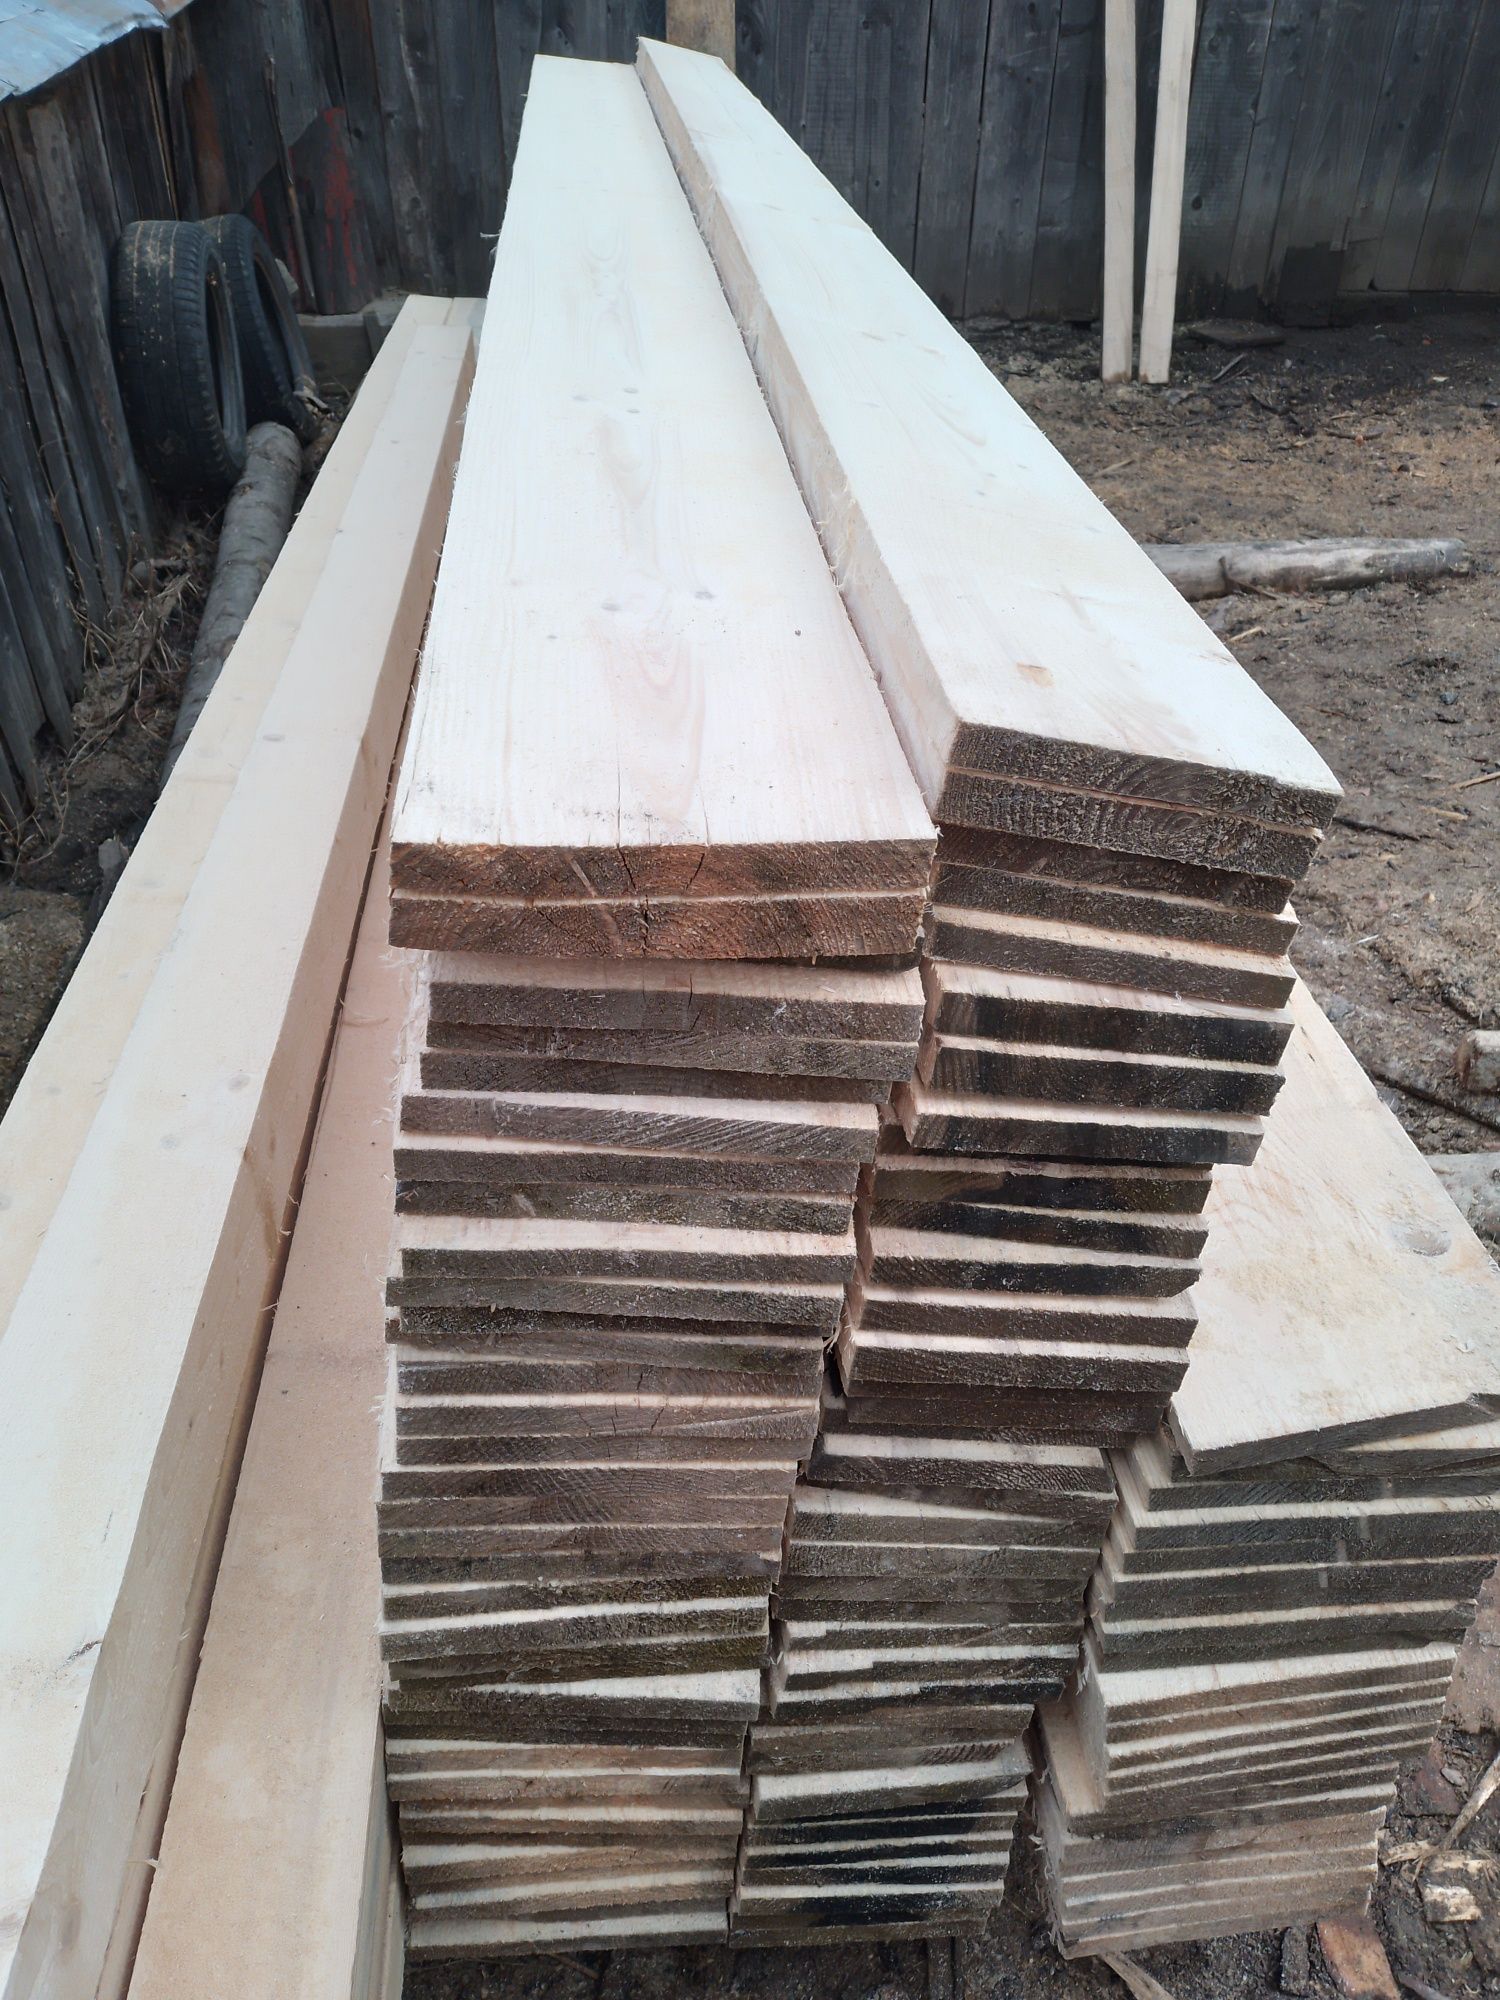 Vând lemn de construcții